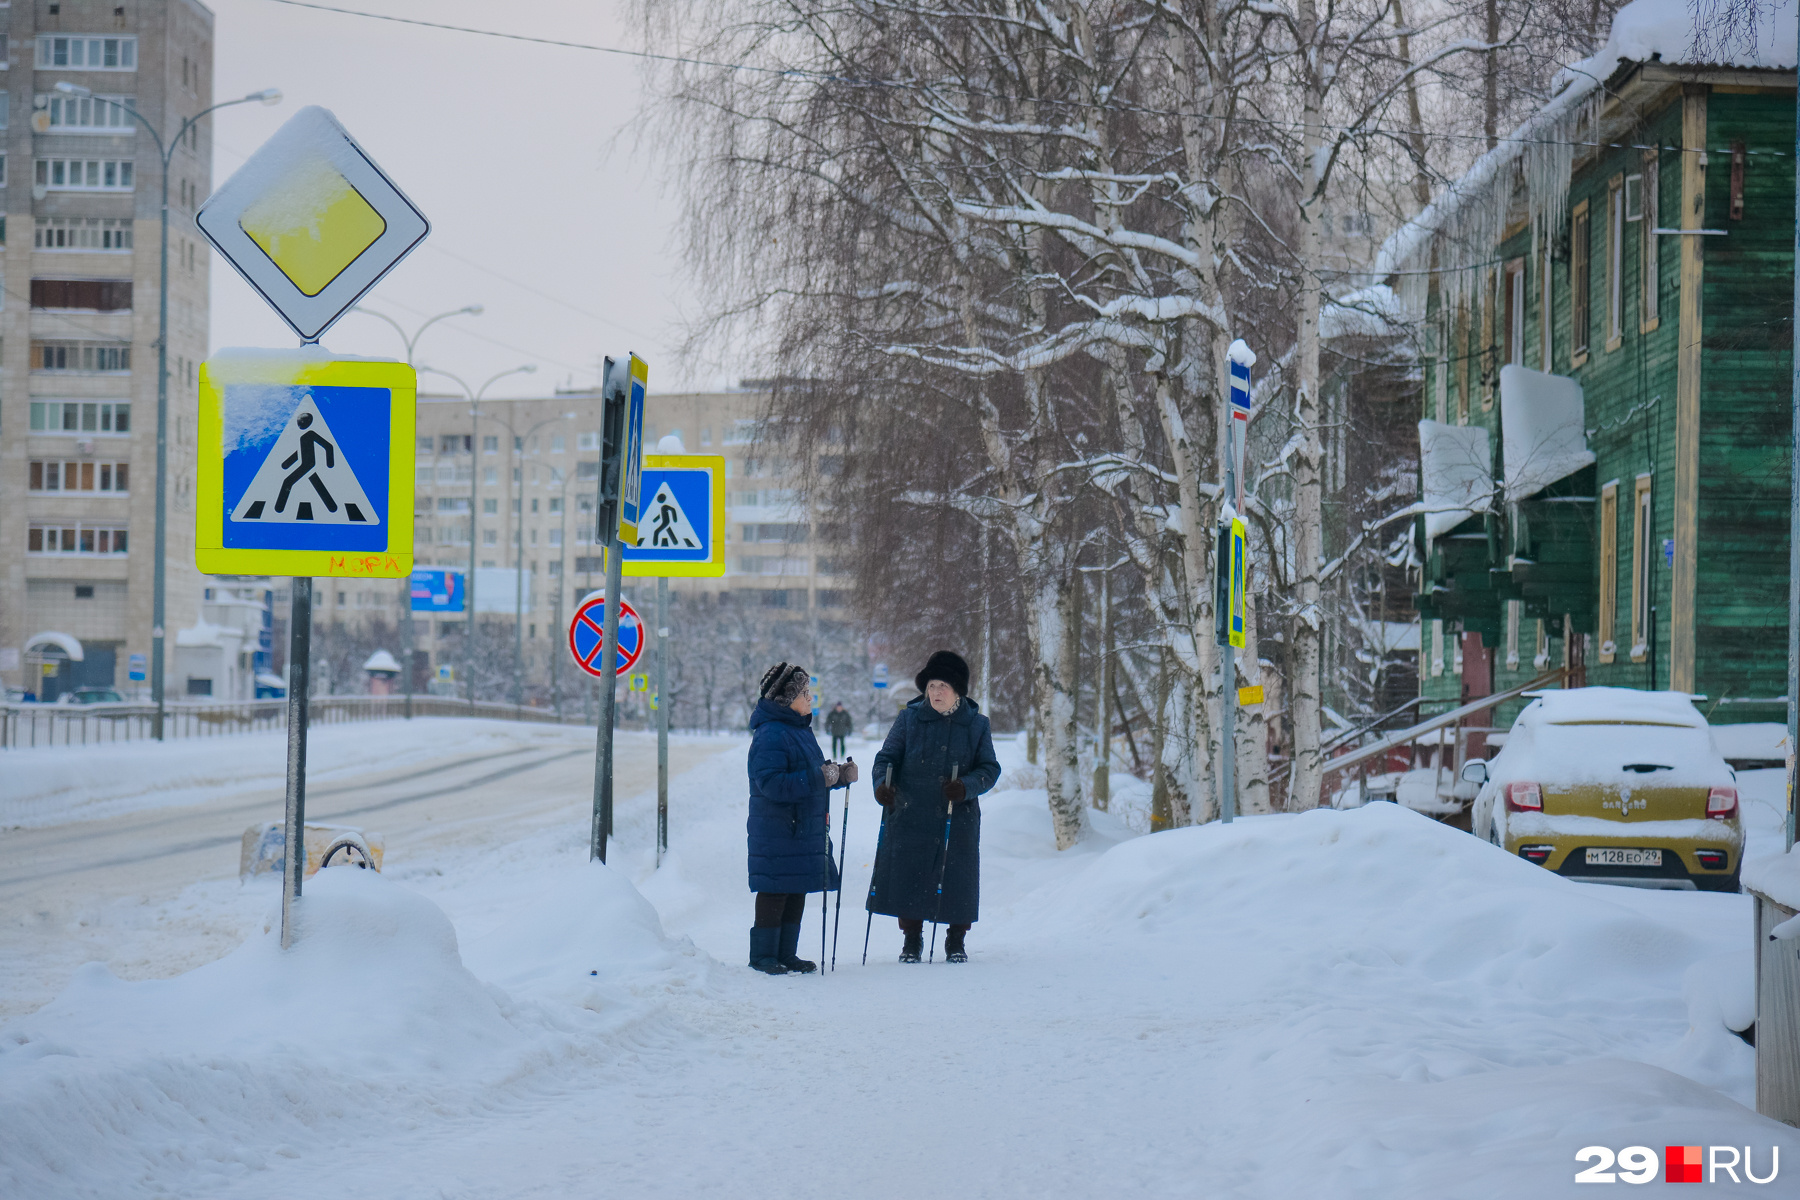 Еще немного активностей на улицах города — бабушки, видимо, занимаются скандинавской ходьбой. Остановились отдохнуть